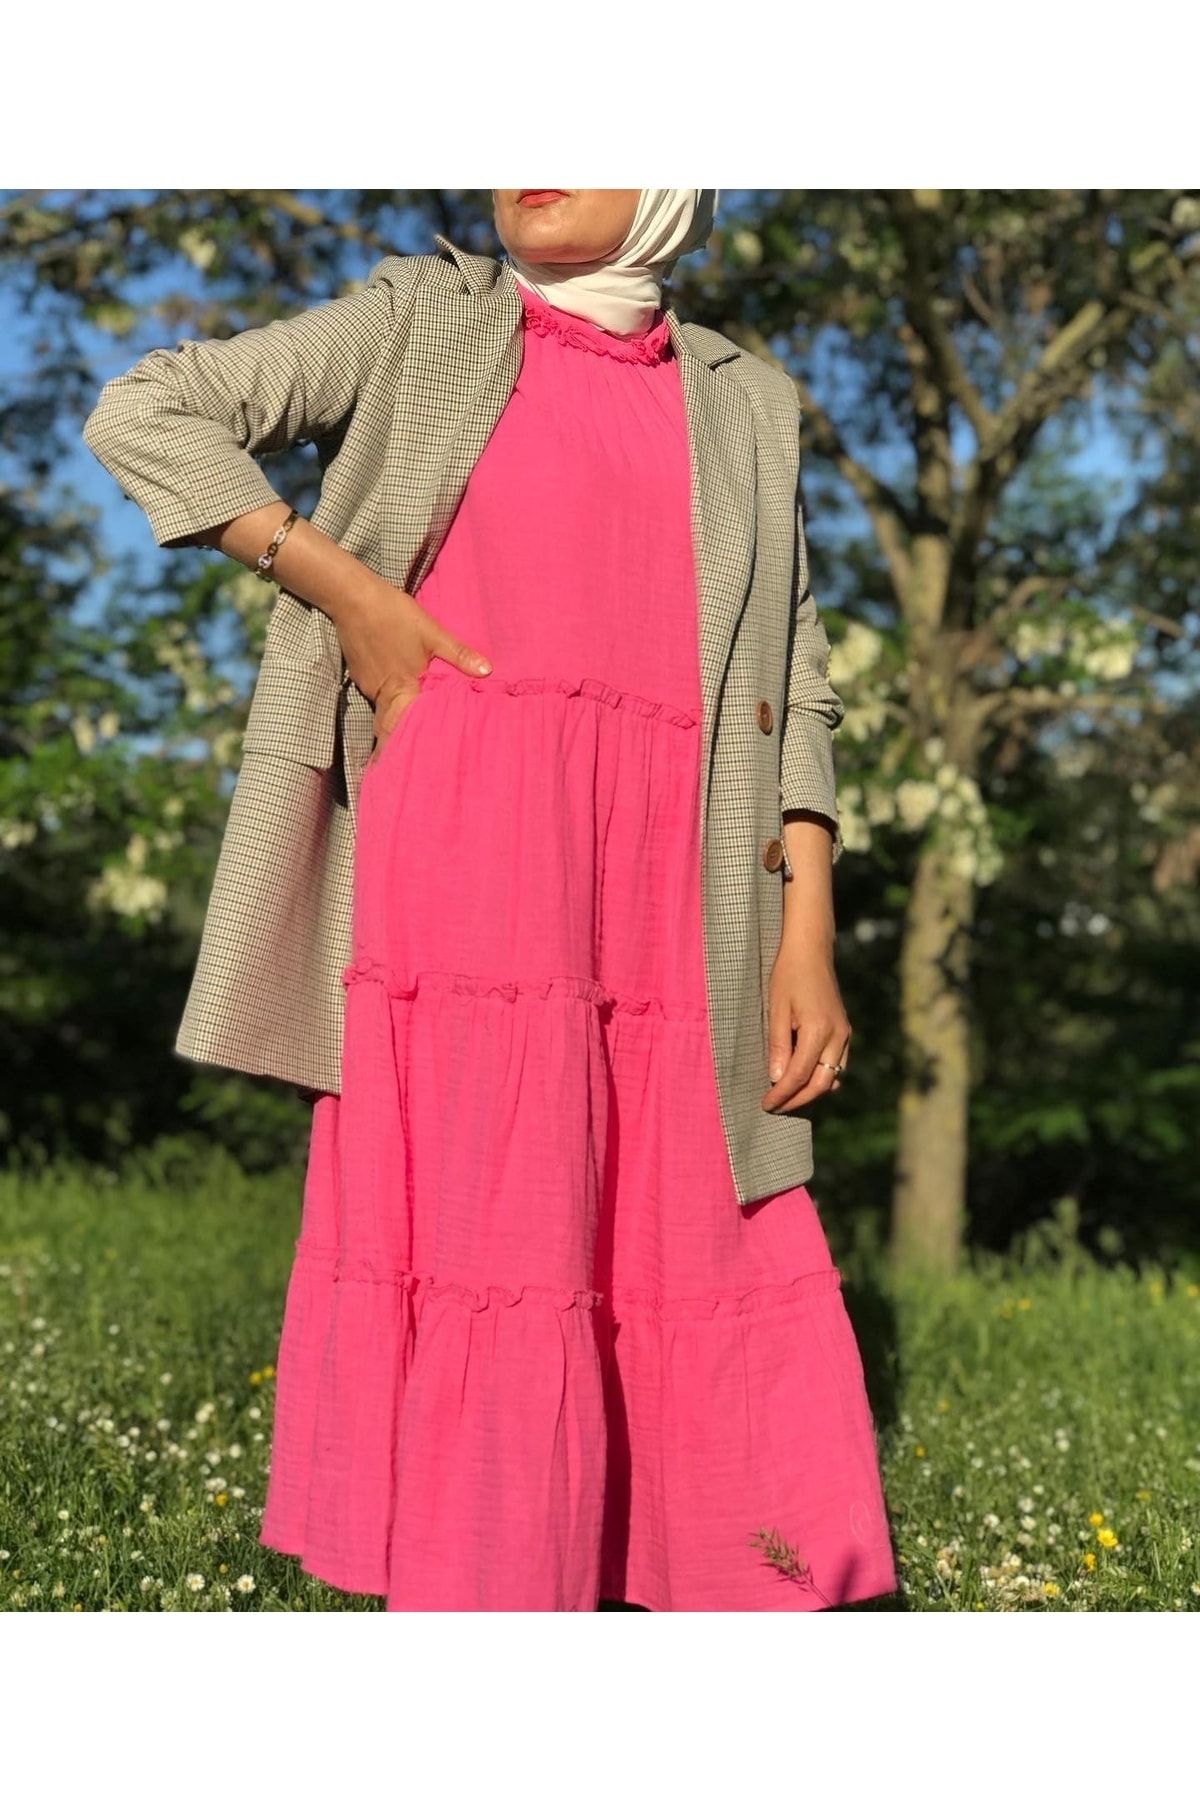 Batik Kadın Fuşya Ense Kurdelalı Tasarım Müslin Elbise